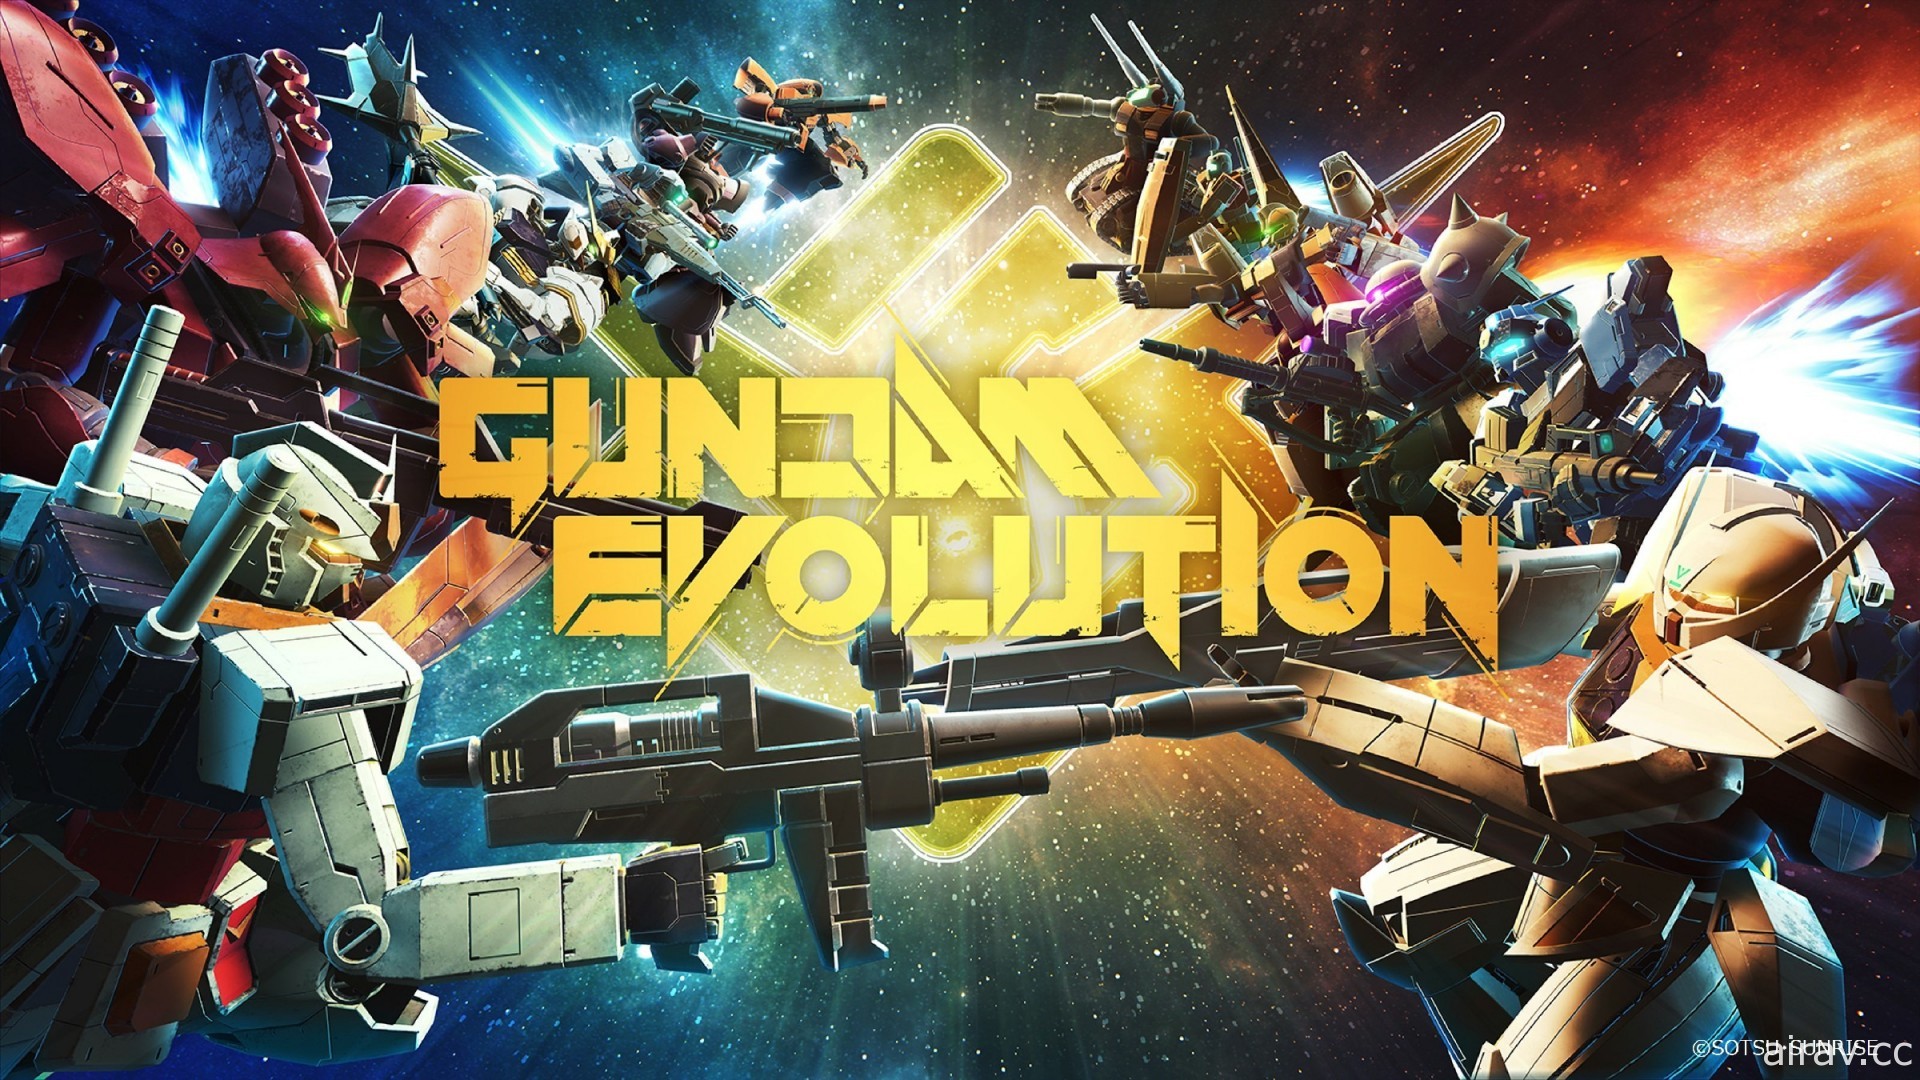 钢弹系列游戏作品直播节目“GUNDAM GAME FEST”将于 5 月 27 日全球播出